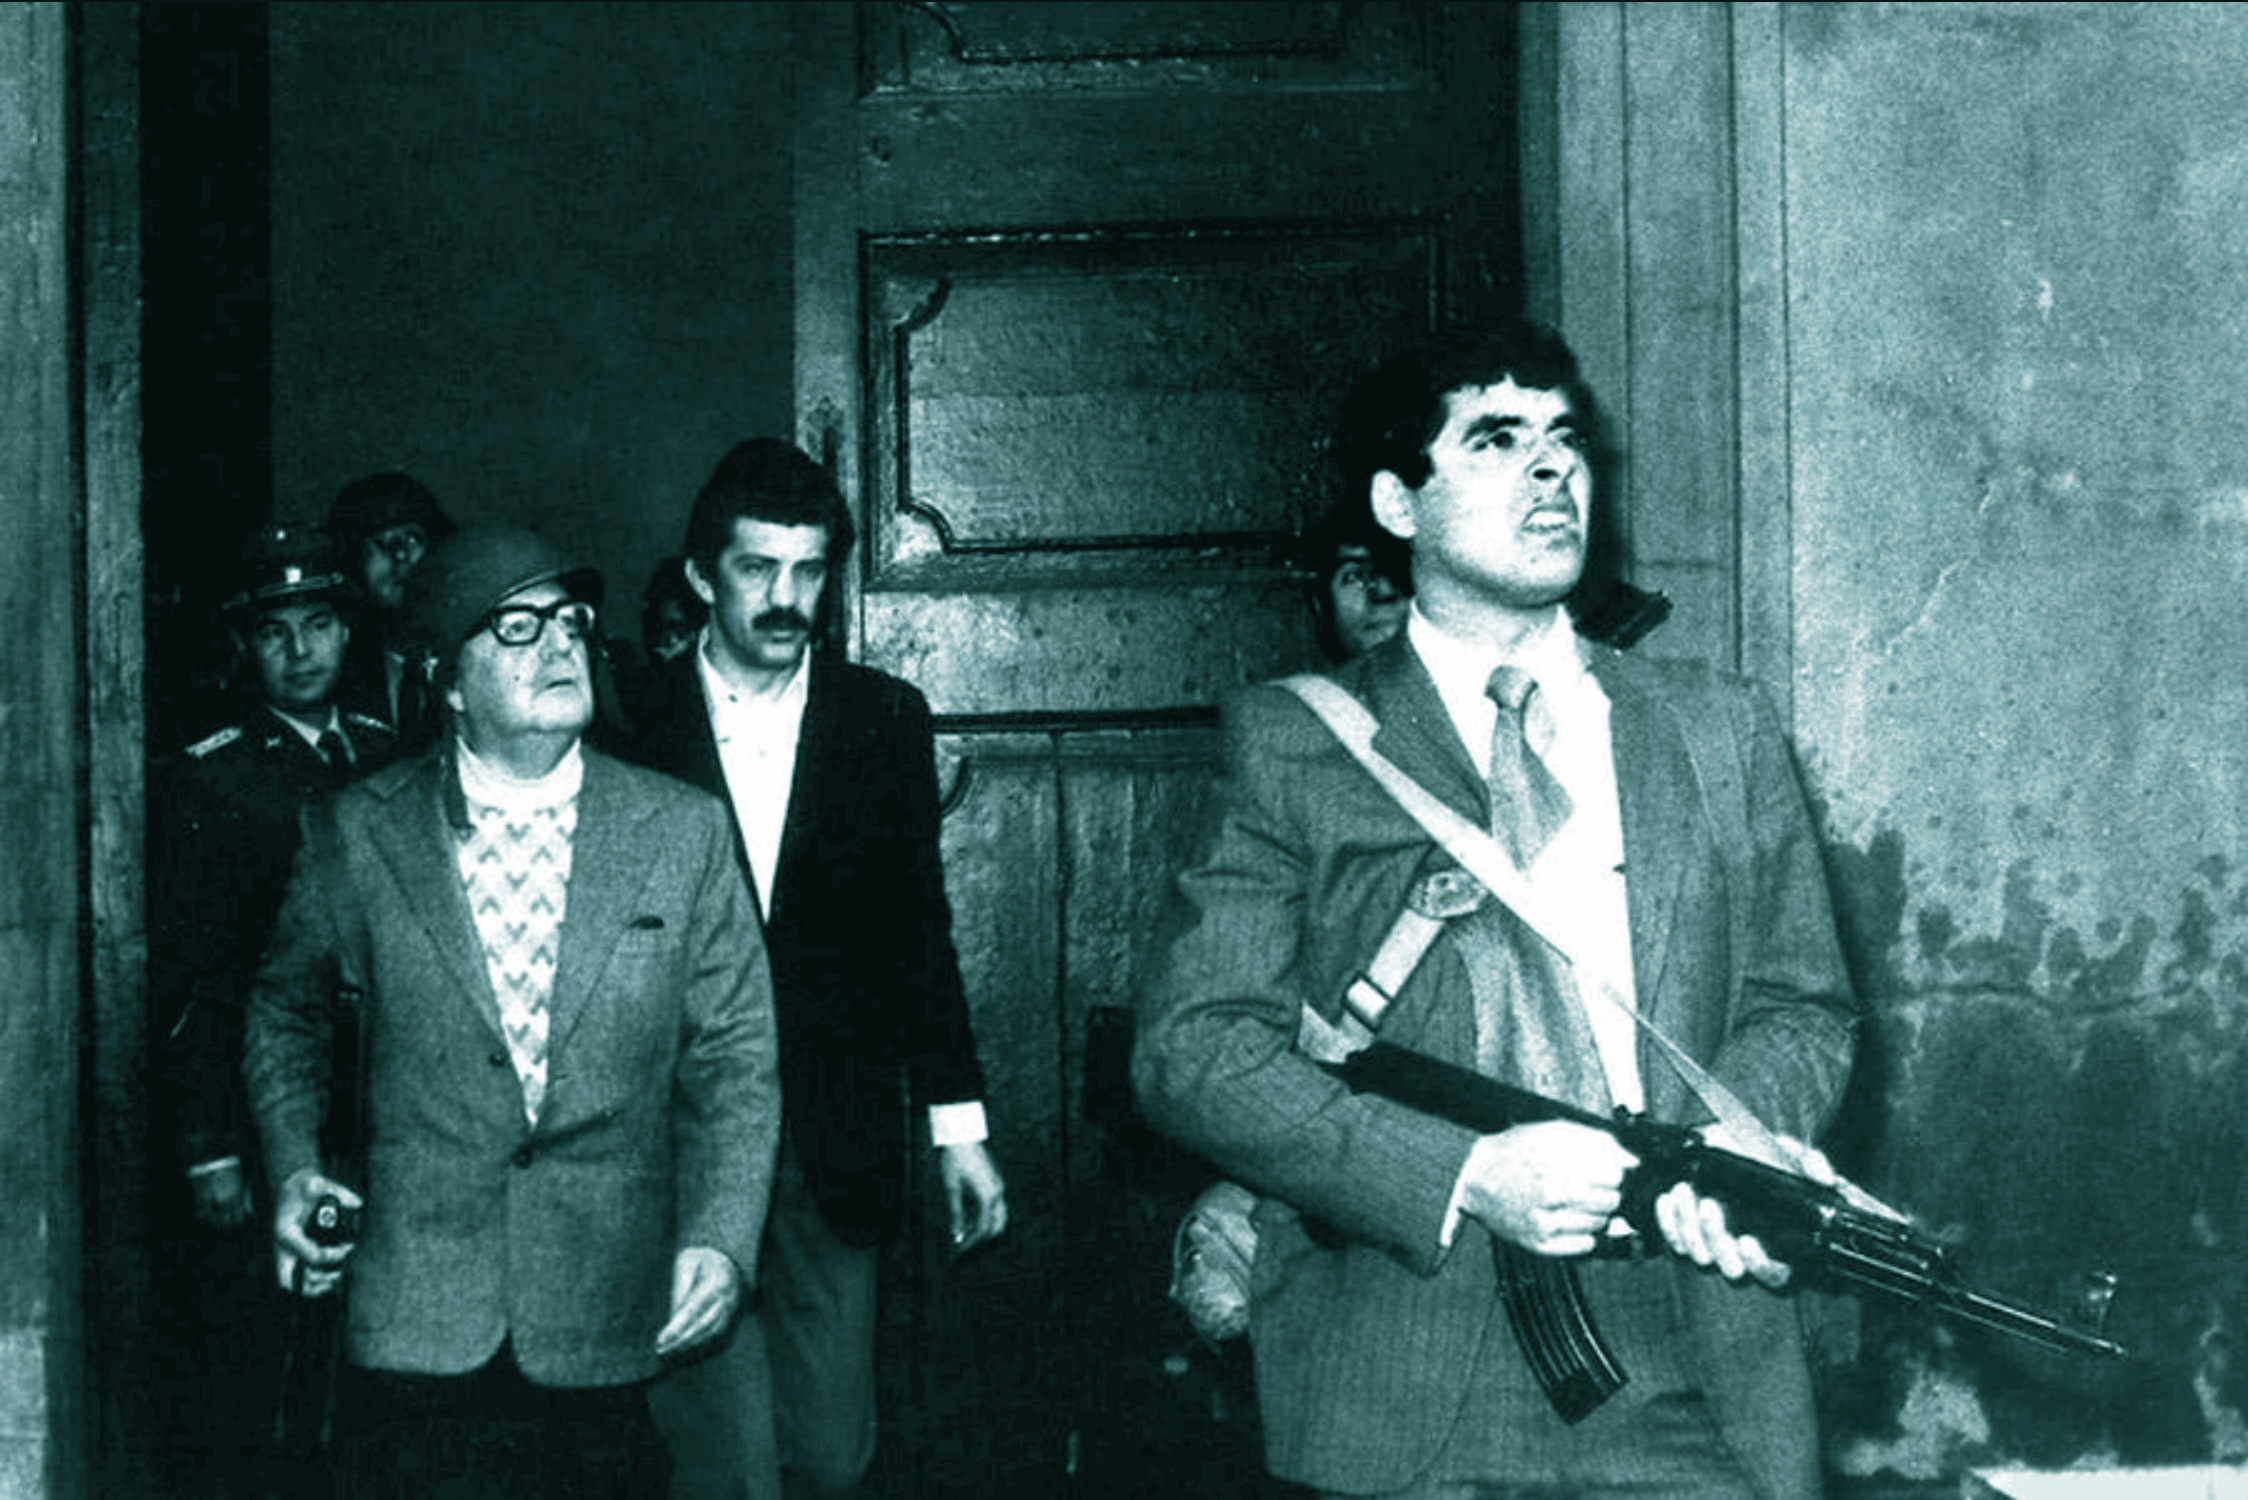 1973, Militärputsch in Chile: Das letzte Bild von Salvador Allende